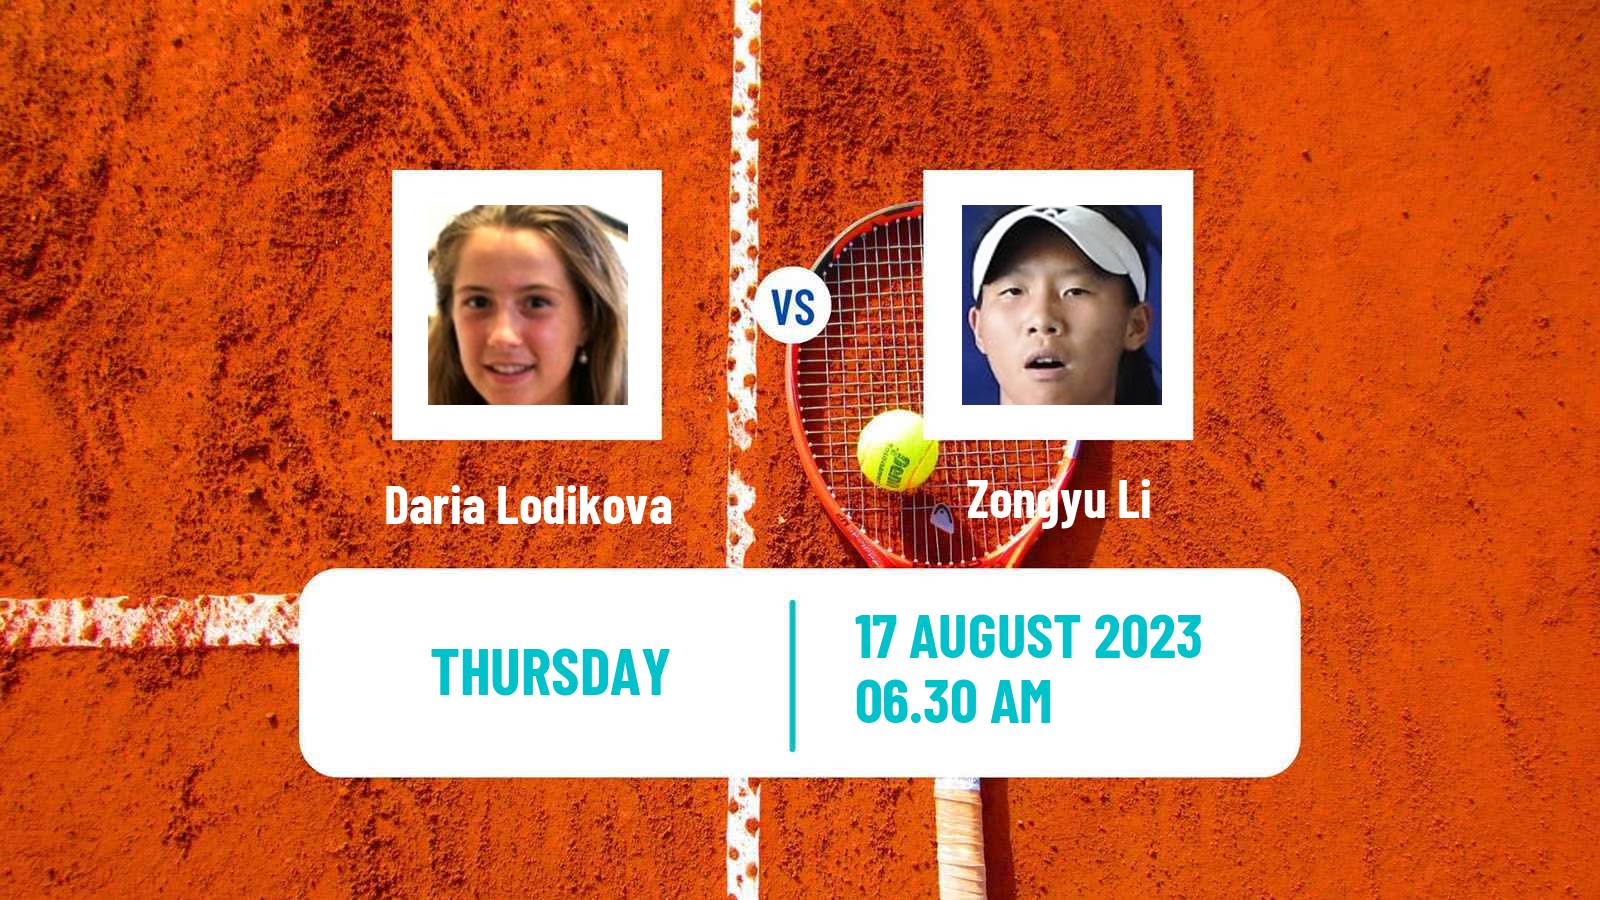 Tennis ITF W40 Nanchang Women Daria Lodikova - Zongyu Li